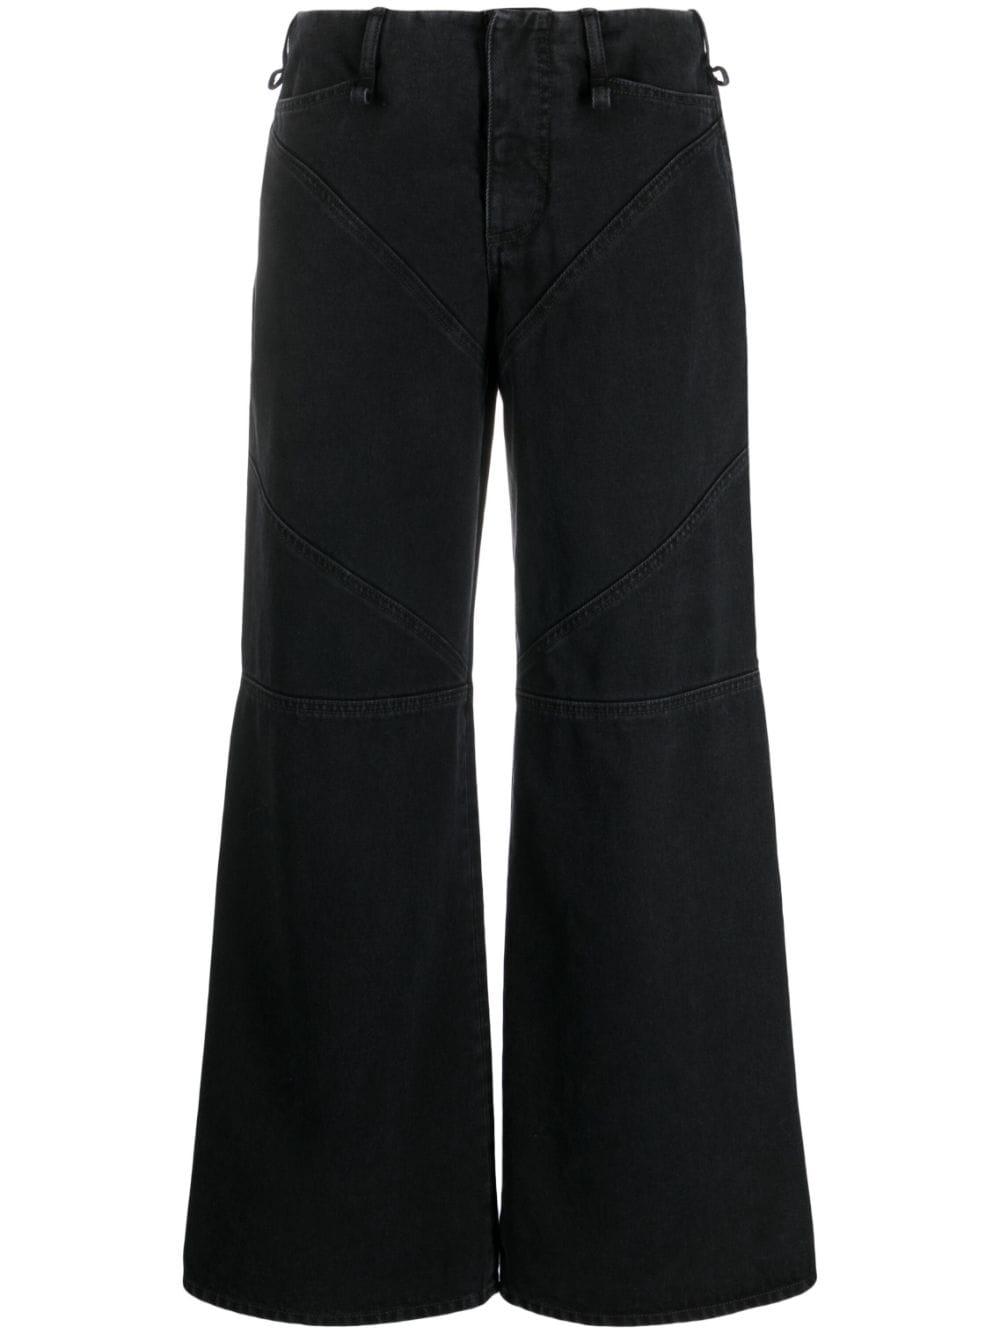 Ioannes Low-rise Wide-leg Jeans in Black | Lyst